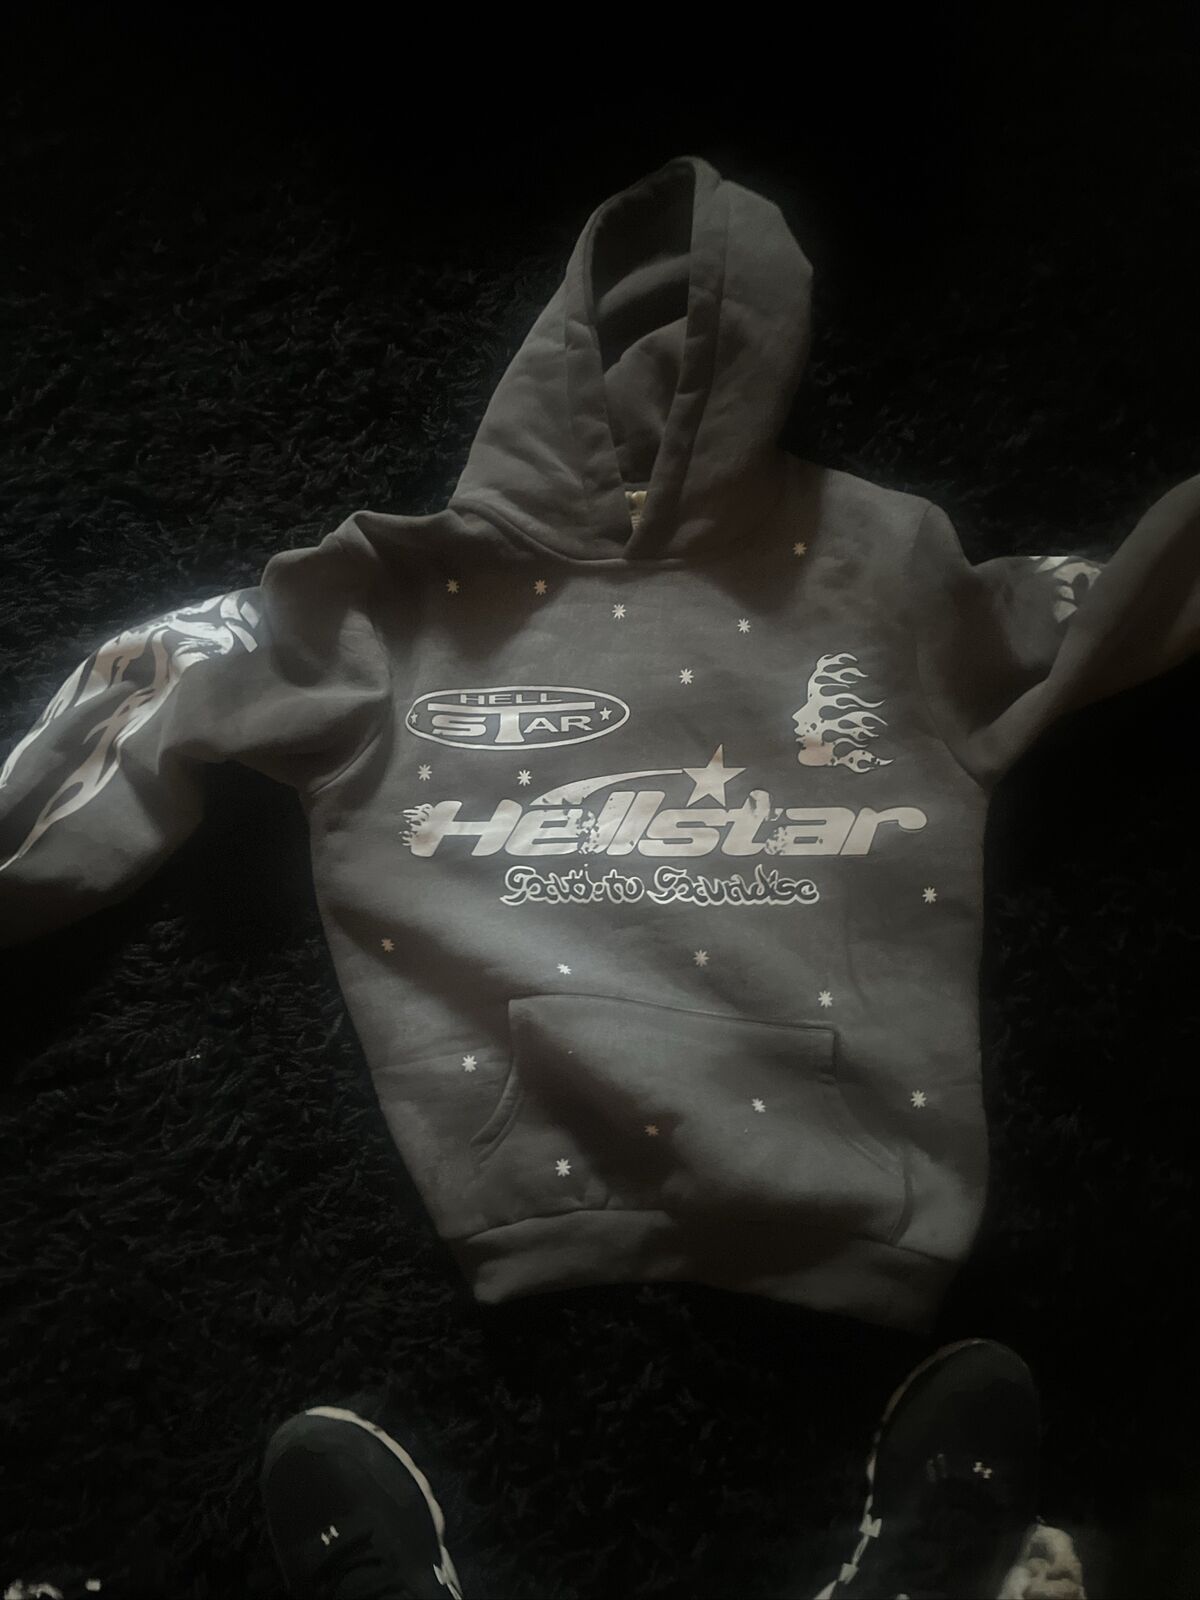 hellstar hoodie medium (never worn) - image 2